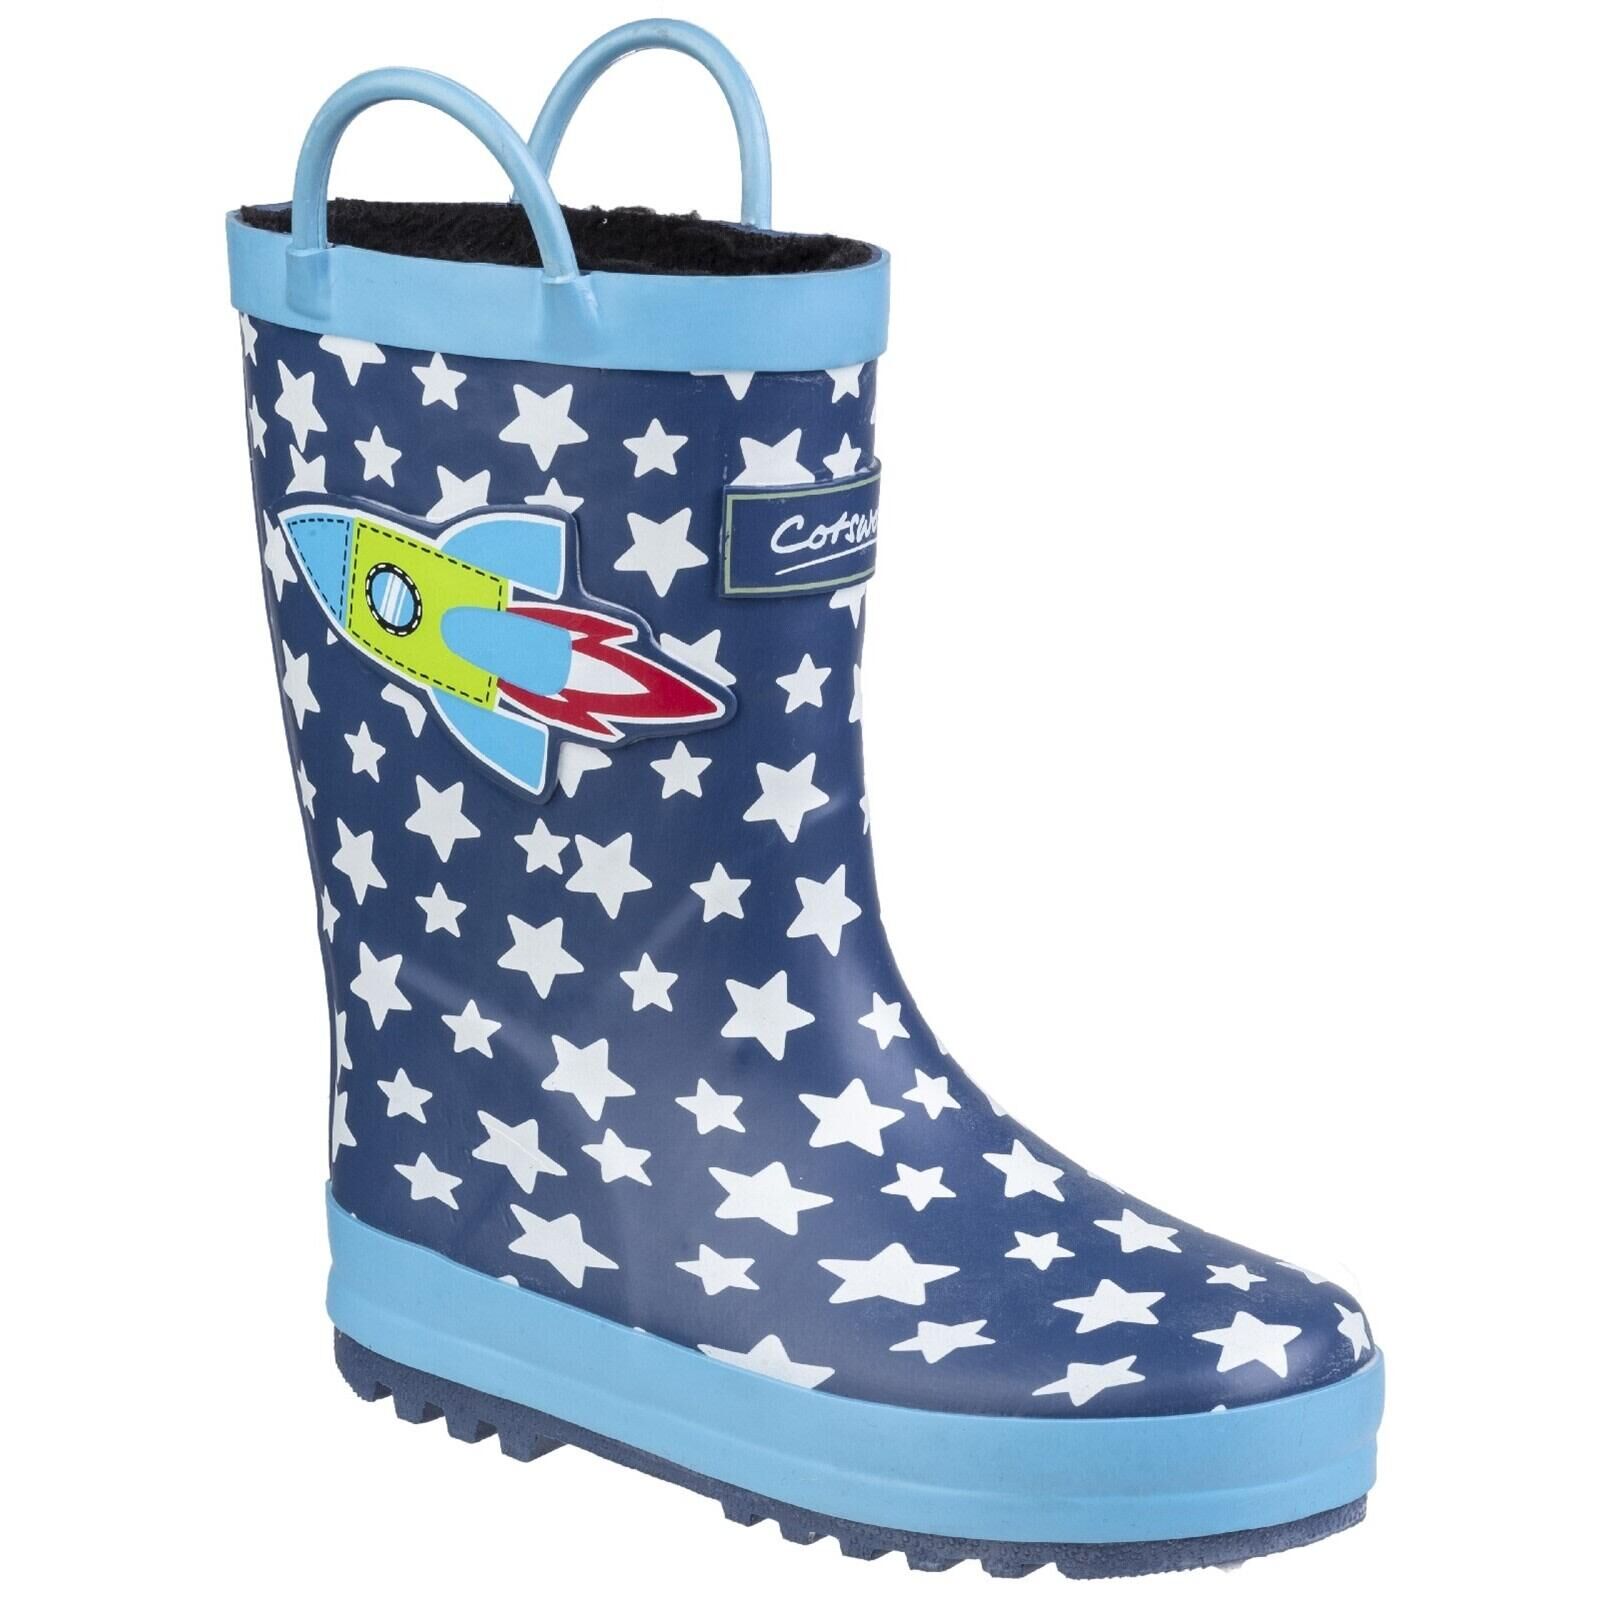 COTSWOLD Childrens/Kids Sprinkle Wellington Boots (Blue Rocket)